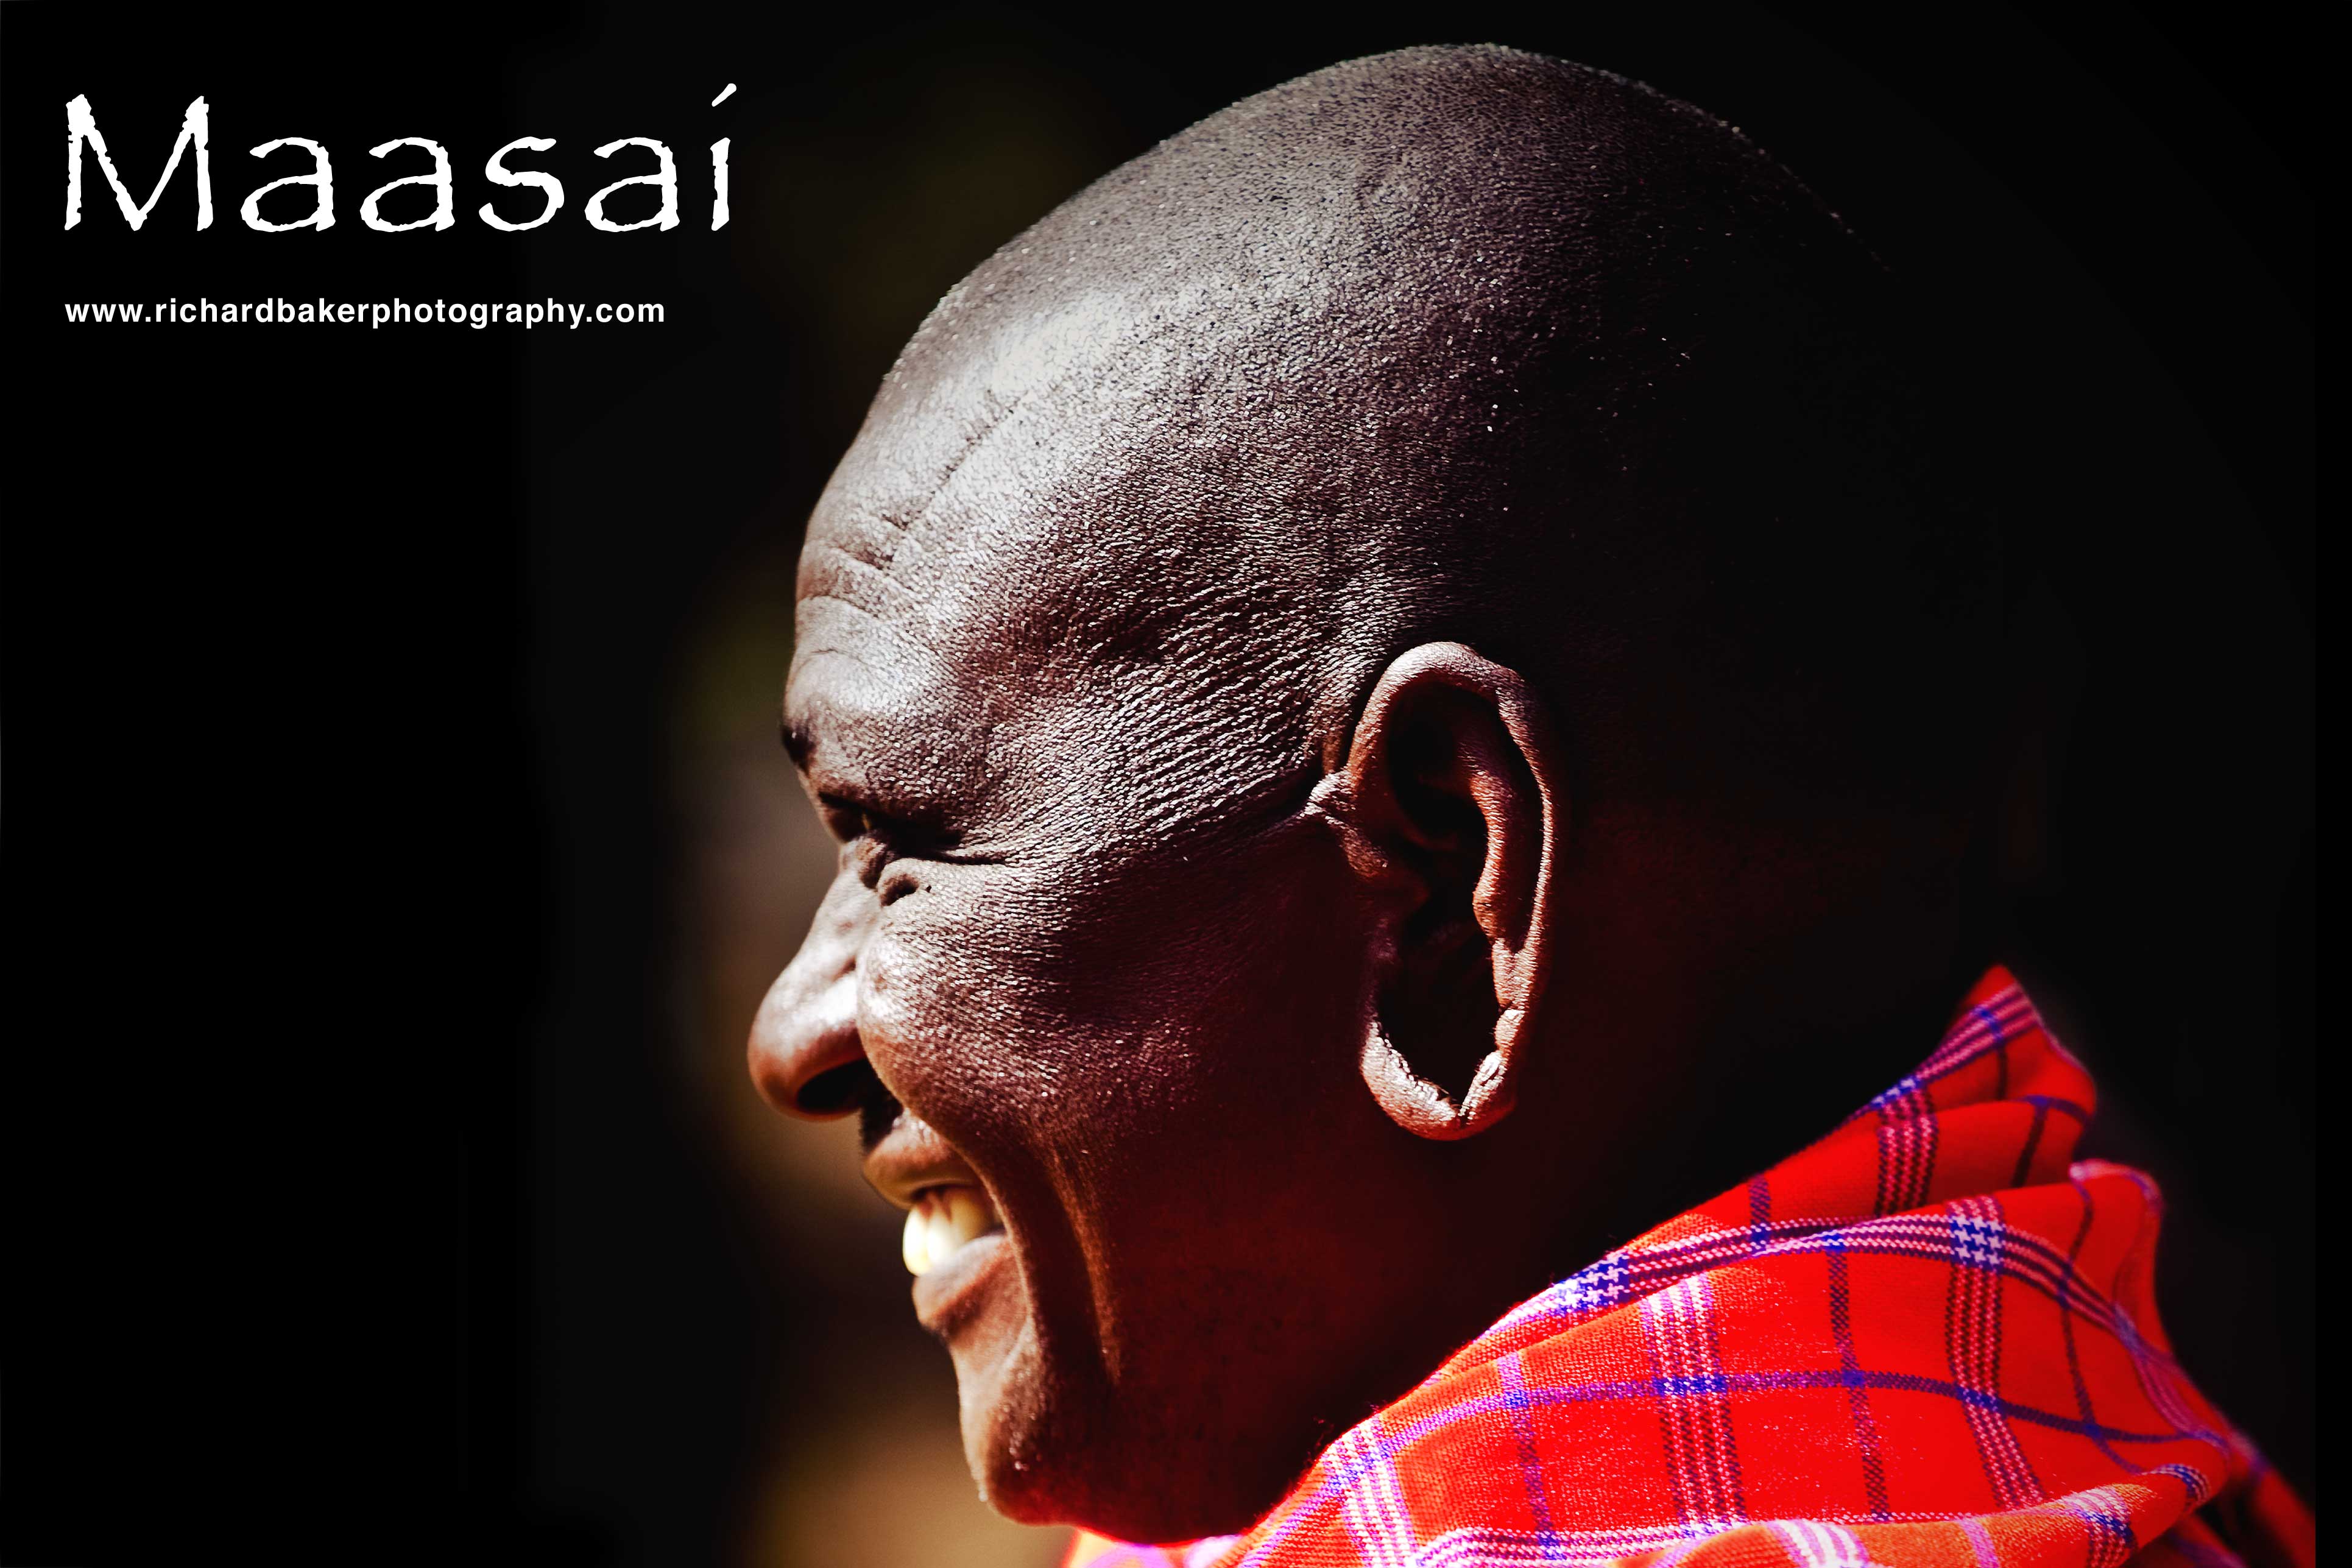 Massai Warrior shoot